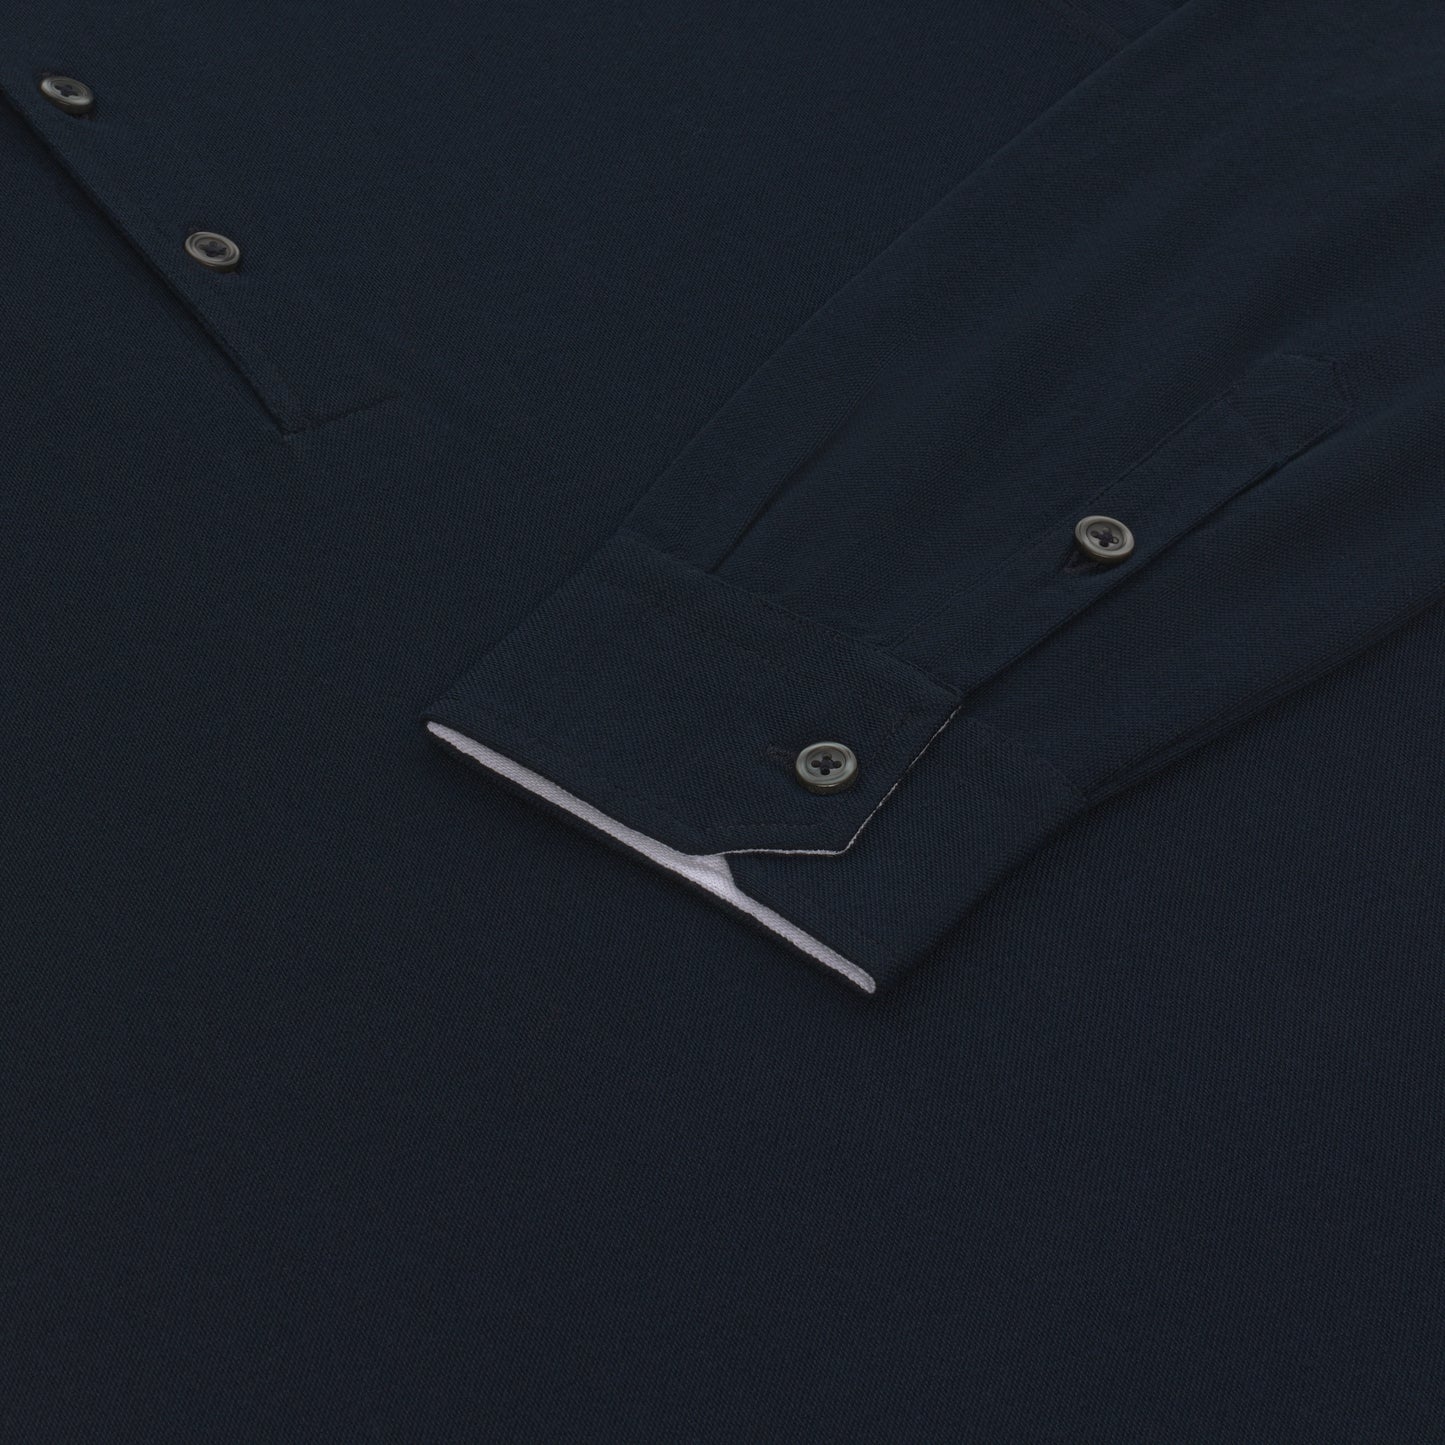 Baumwoll-Poloshirt in Mitternachtsblau mit langen Ärmeln